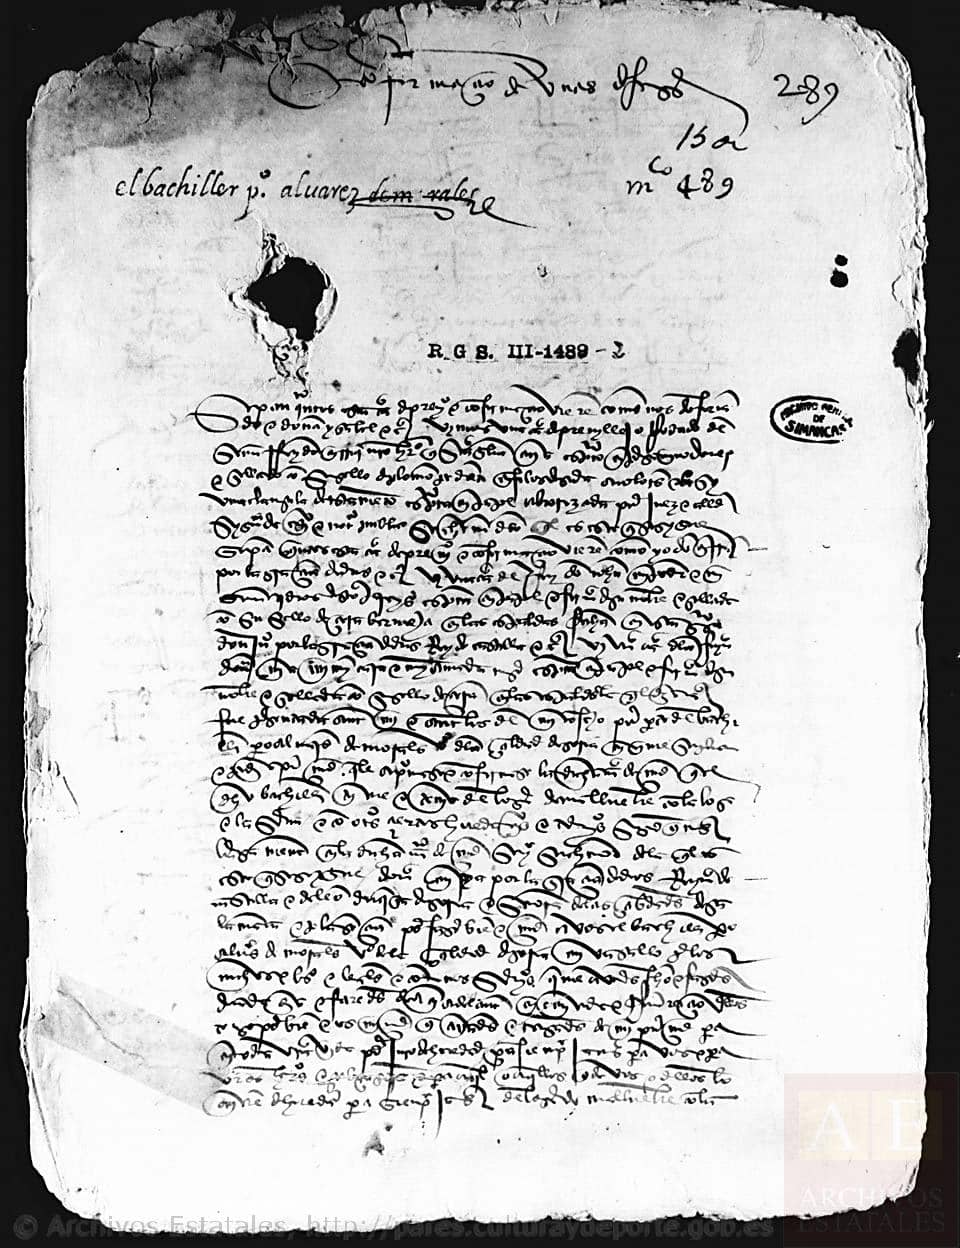 Primera página de la Carta-Privilegio de Malluembre, otorgada por Enrique IV en 1458. Archivo General de Simancas. Fotografía Joaquina Gutiérrez Peña